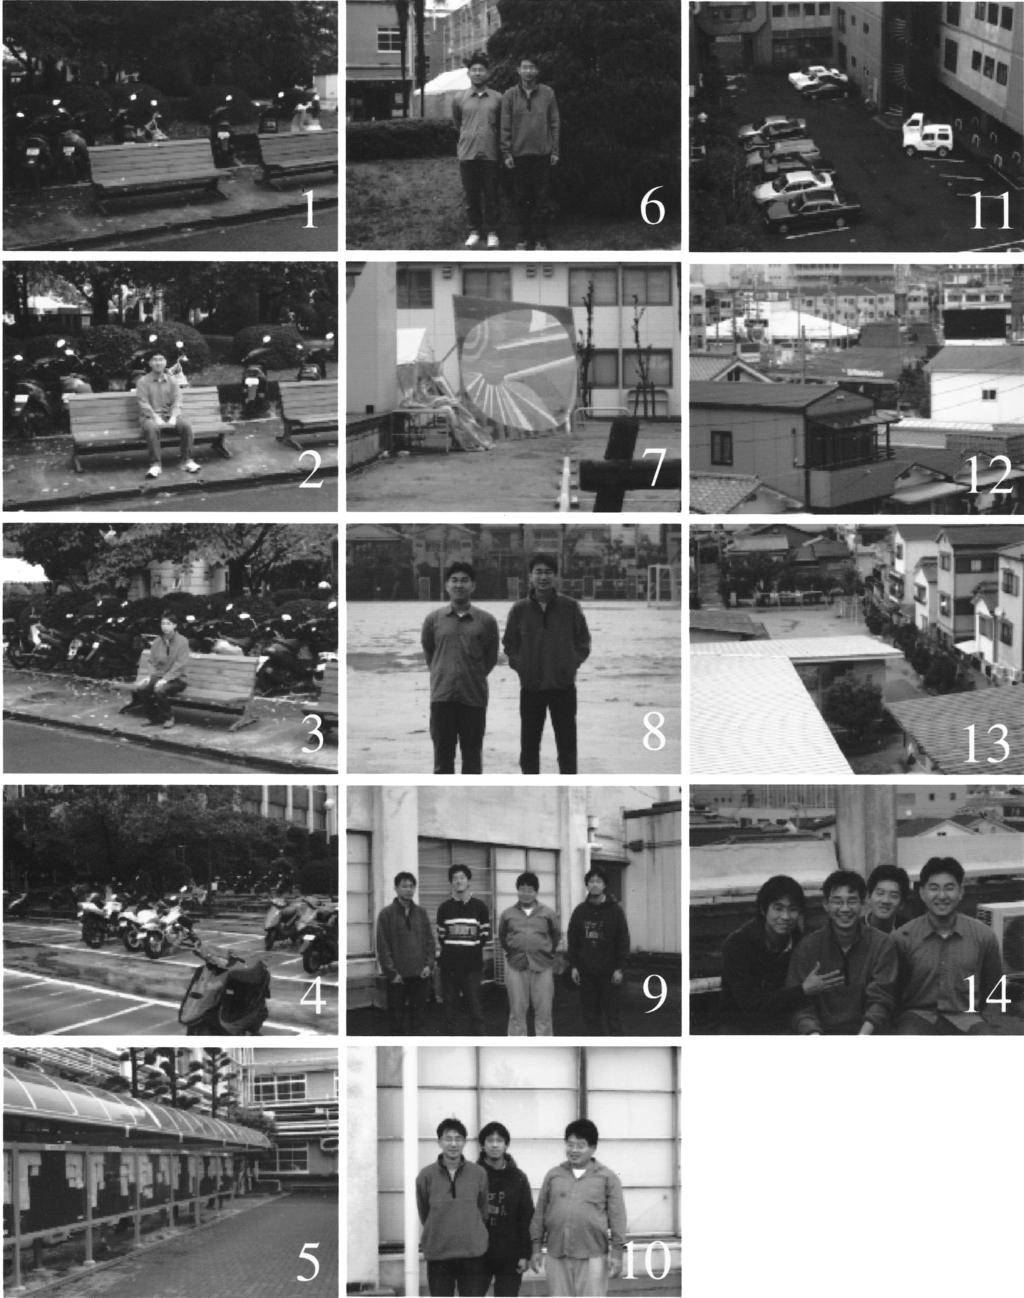 Tominaga et al. Vol. 18, No. 1/January 2001/J. Opt. Soc. Am. A 61 Fig. 10. Set of images of outdoor scenes.